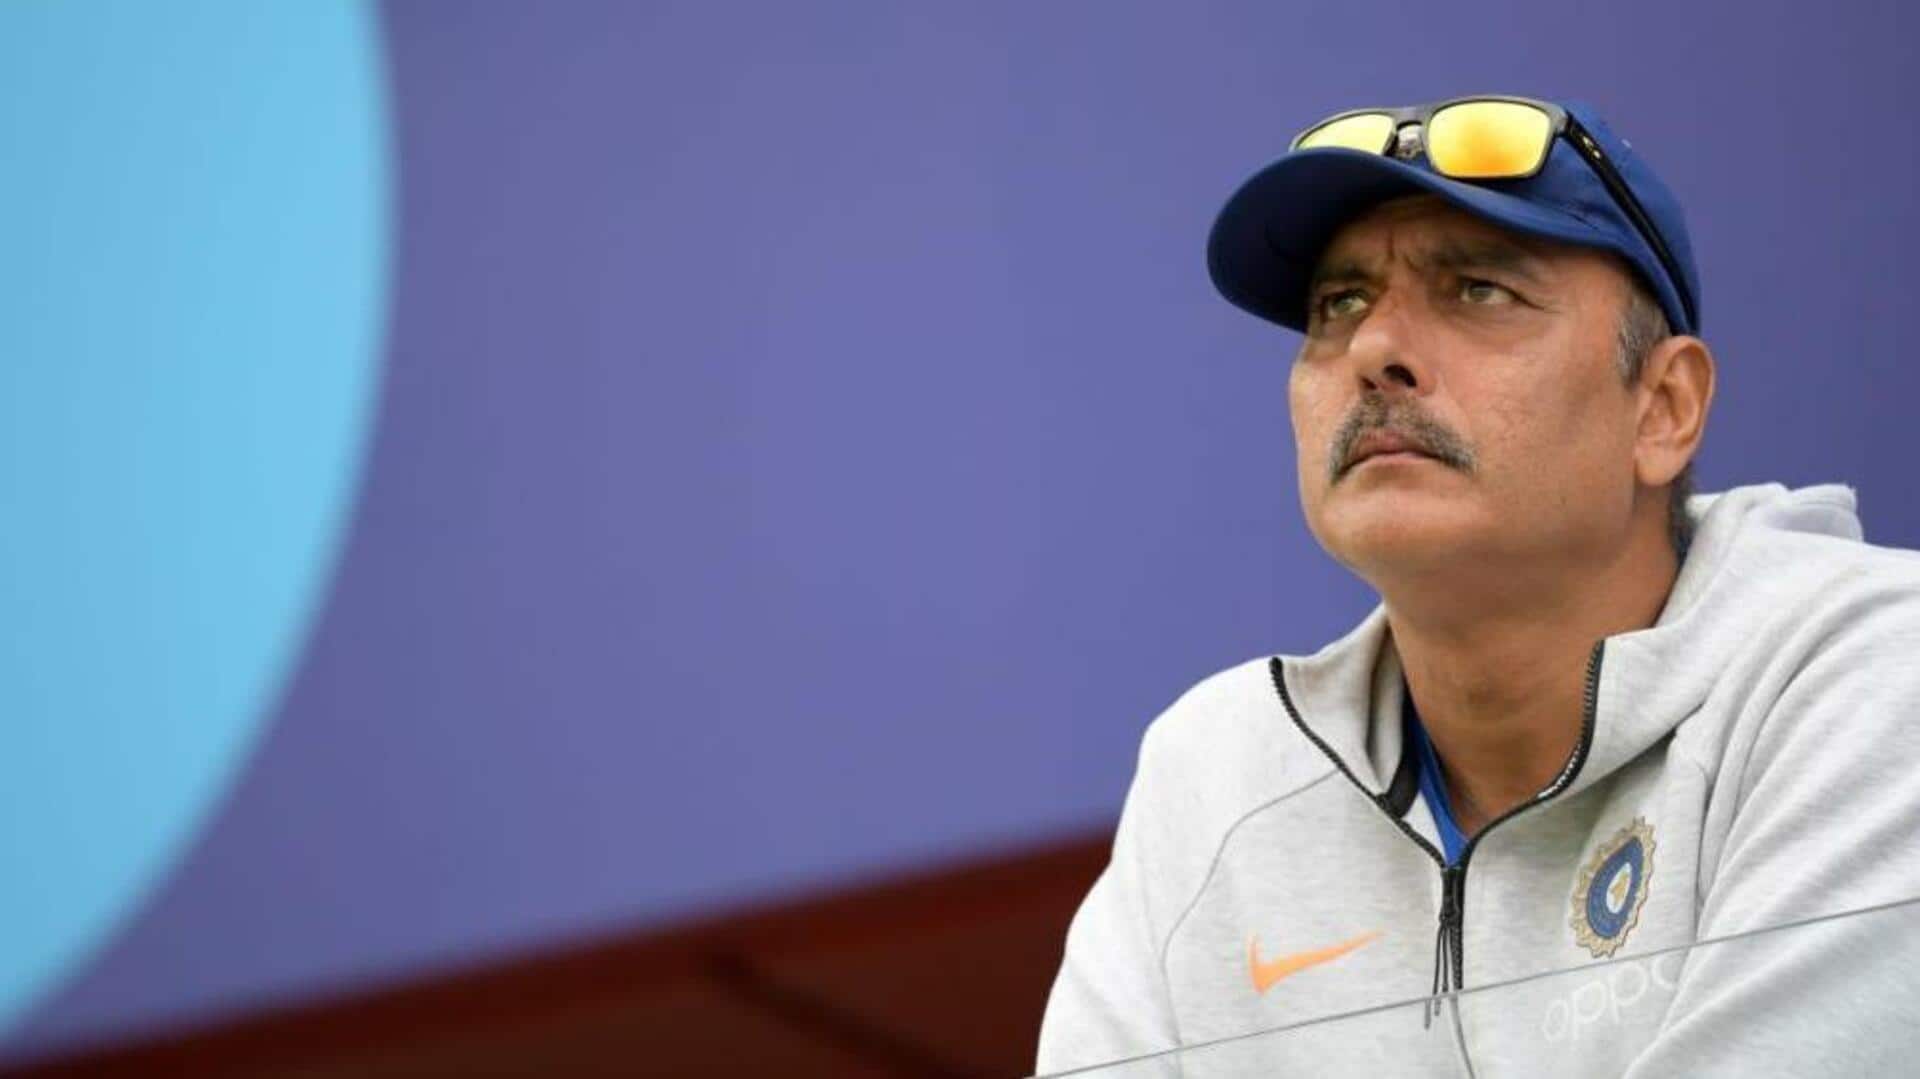 रवि शास्त्री ने भारतीय टीम की रणनीति पर उठाए सवाल, नई बॉल लेने पर साधा निशाना